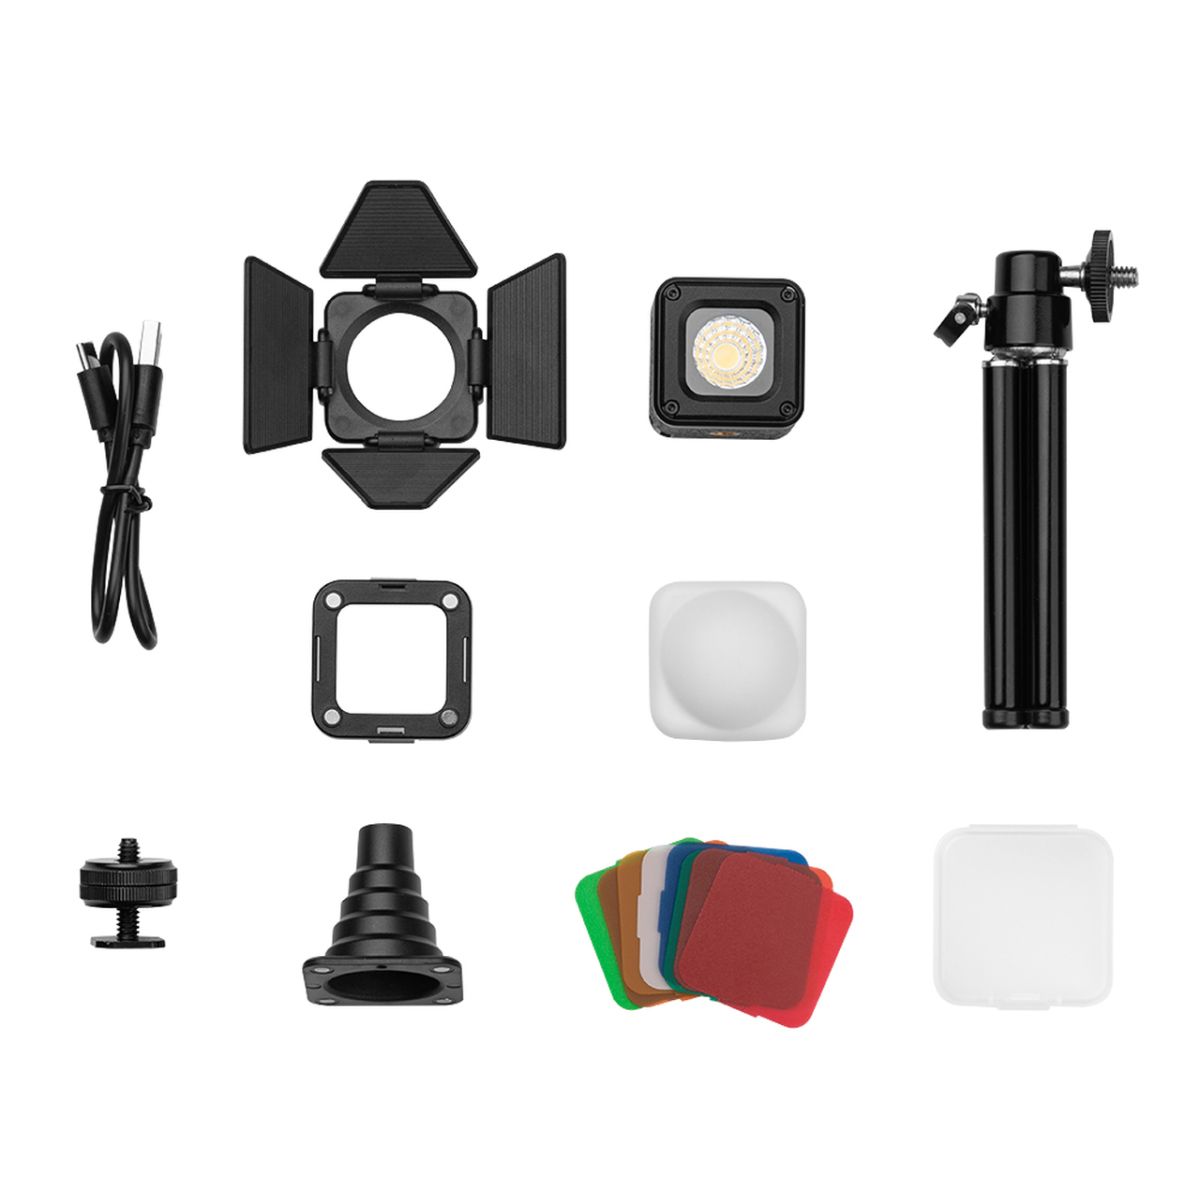 SmallRig 3469 RM01 LED-Videoleuchten-Kit